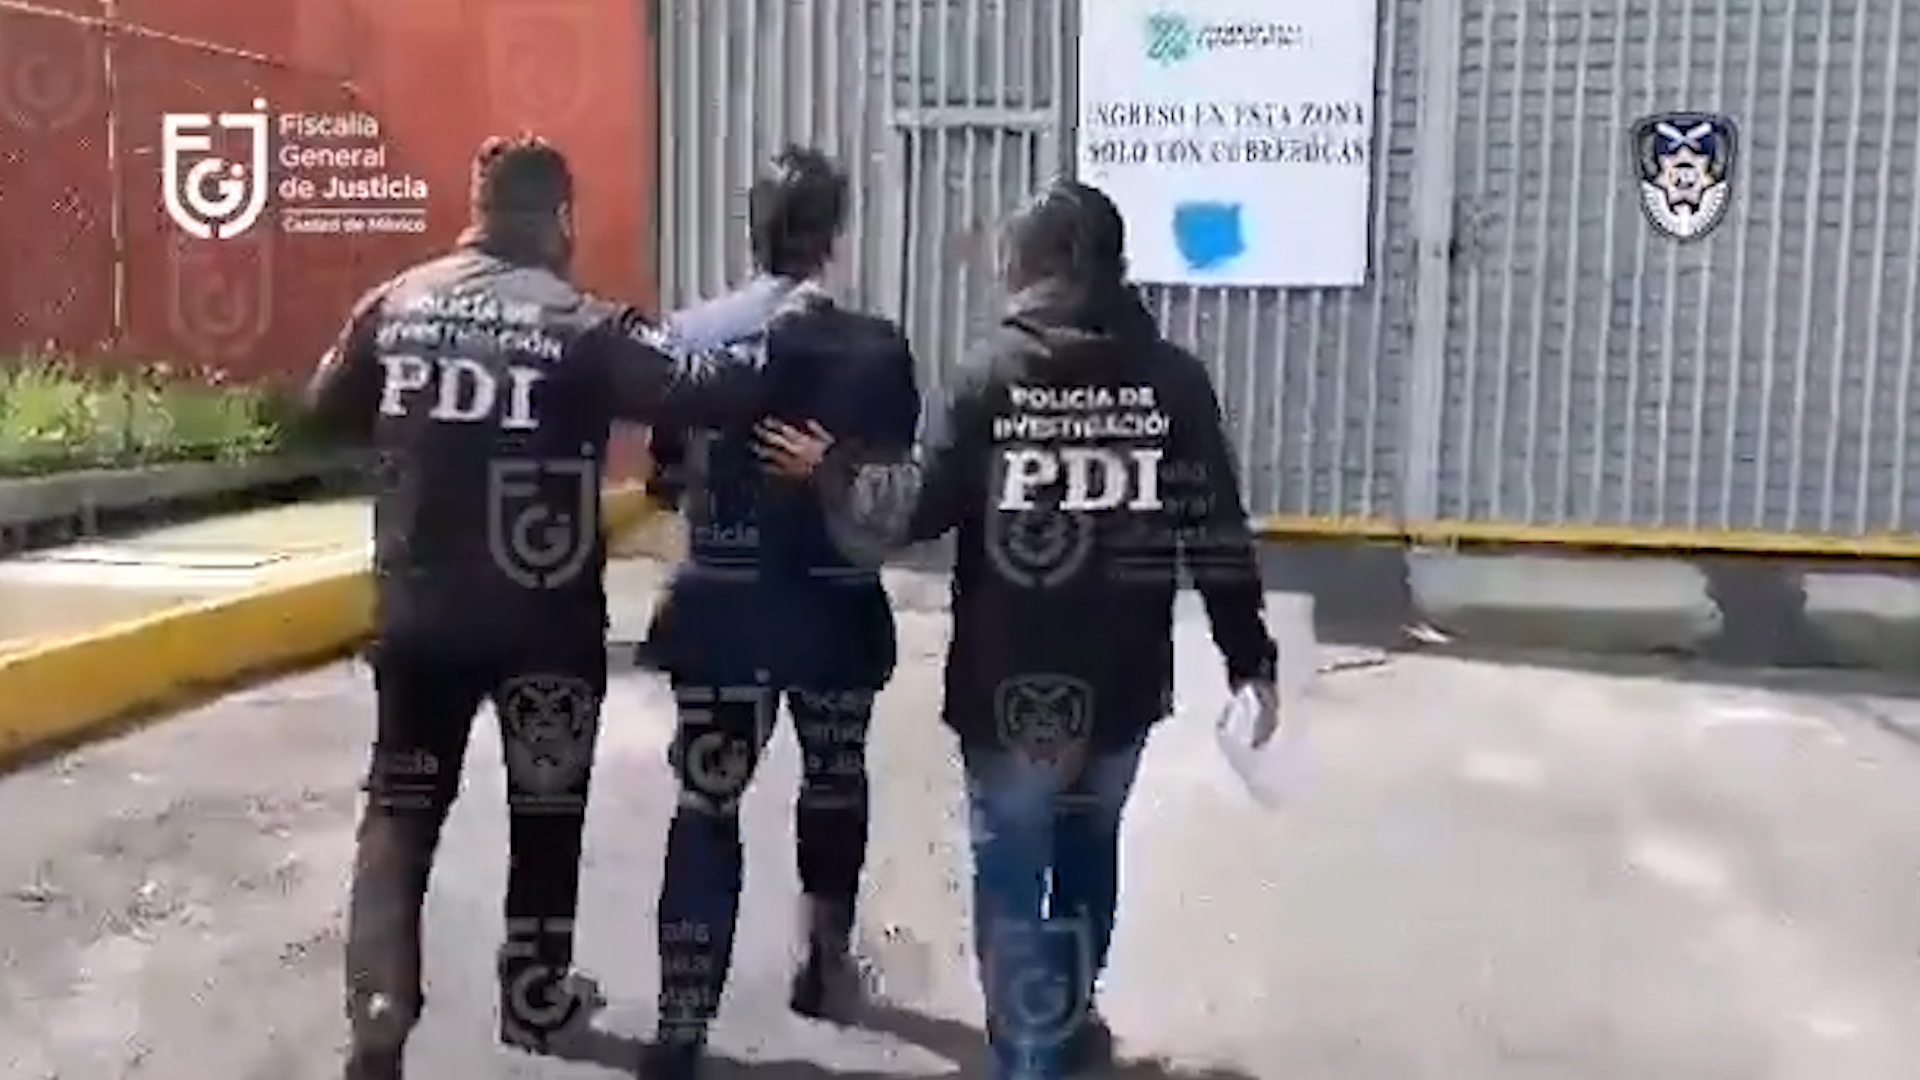 Detención de Alejandro del Valle, accionista de Interjet y socio de Miguel Aleman Magnani. (Foto: Captura Fiscalía General de Justicia)